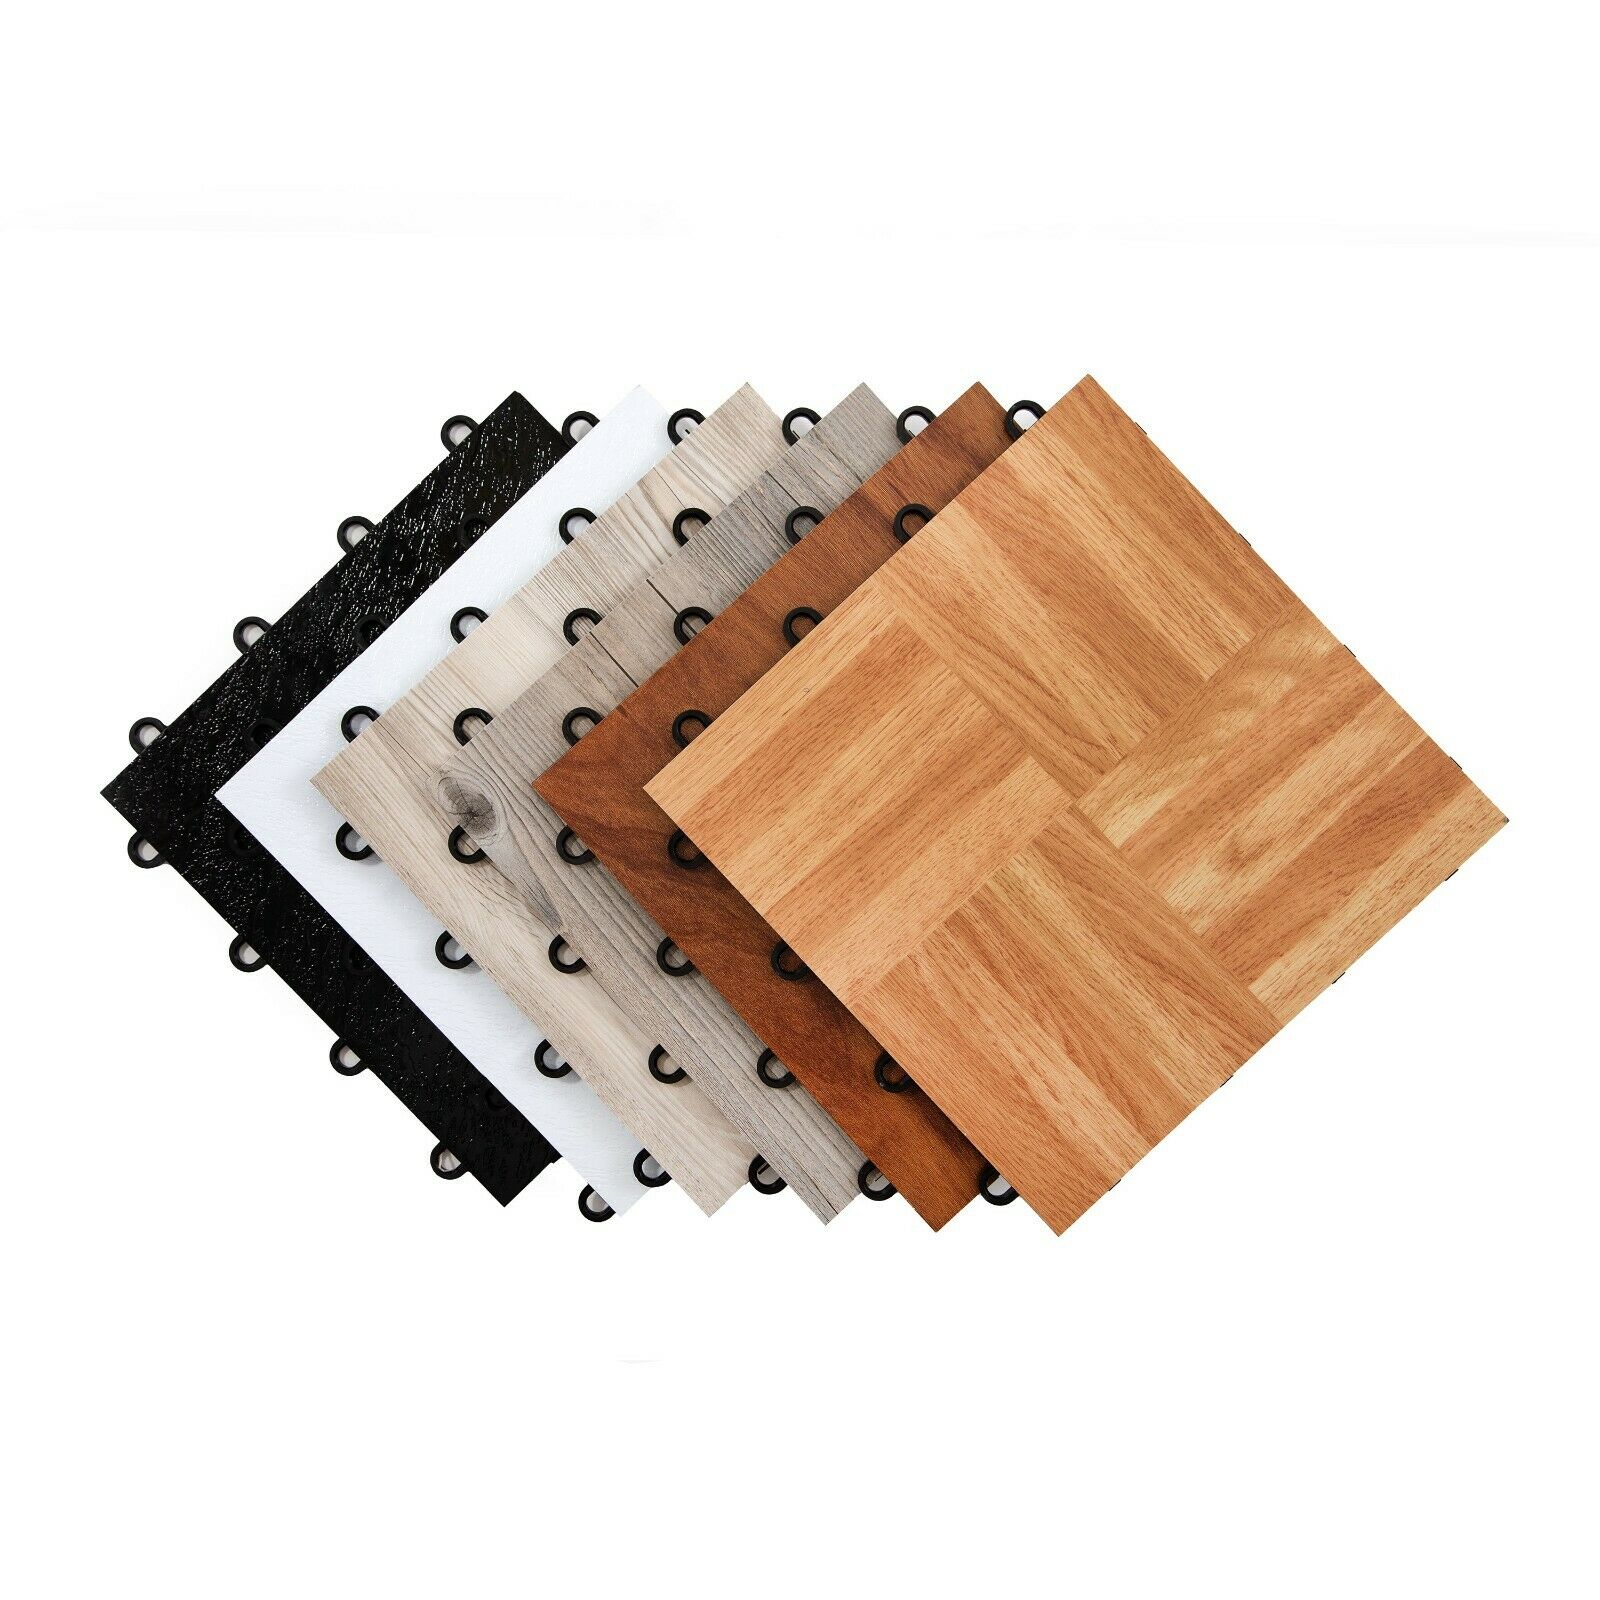 Flooringinc 12" X 12" Practice Dance Tiles - Interlocking Dance Flooring 1 Tile